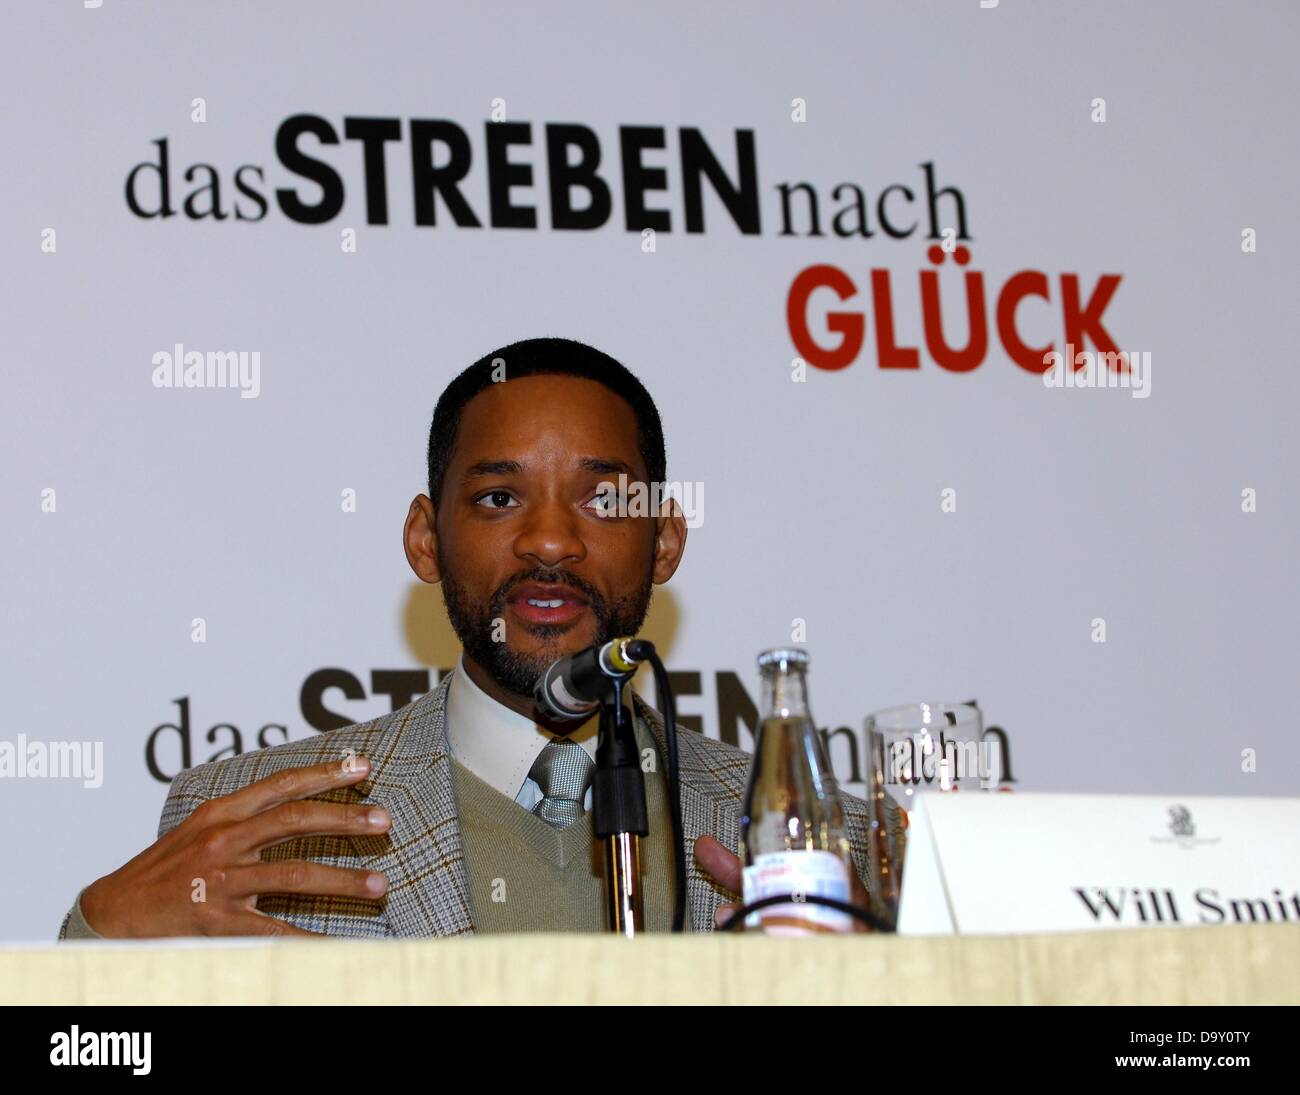 Attore Will Smith presso la conferenza stampa in occasione della premiere del film "La ricerca della felicità" di Berlino. Foto Stock